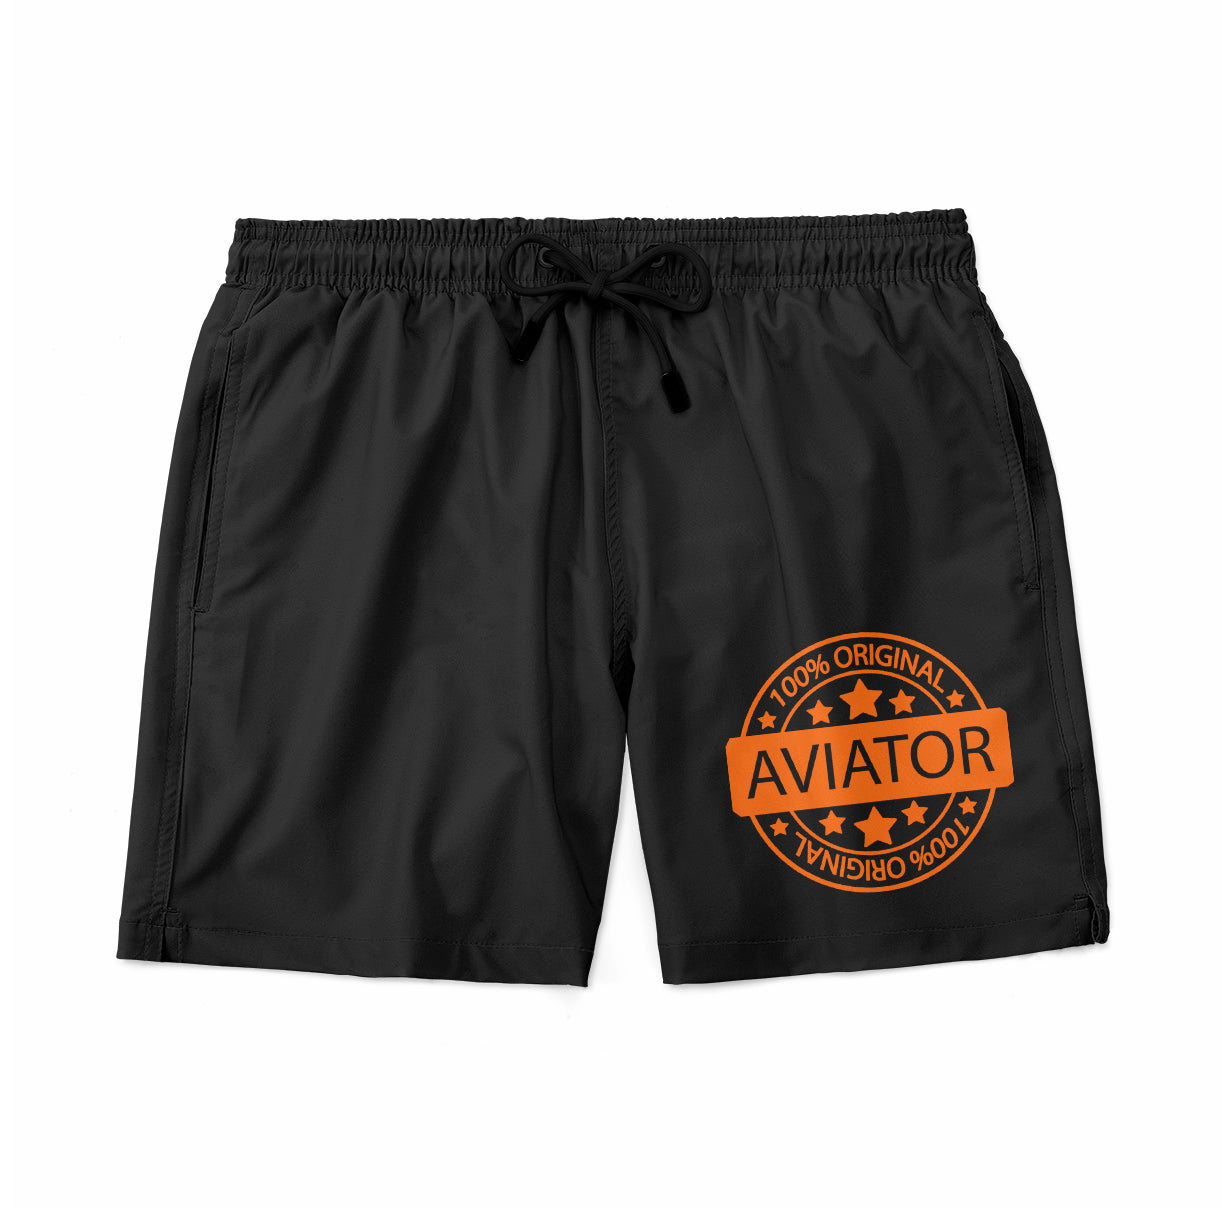 %100 Original Aviator Designed Swim Trunks & Shorts